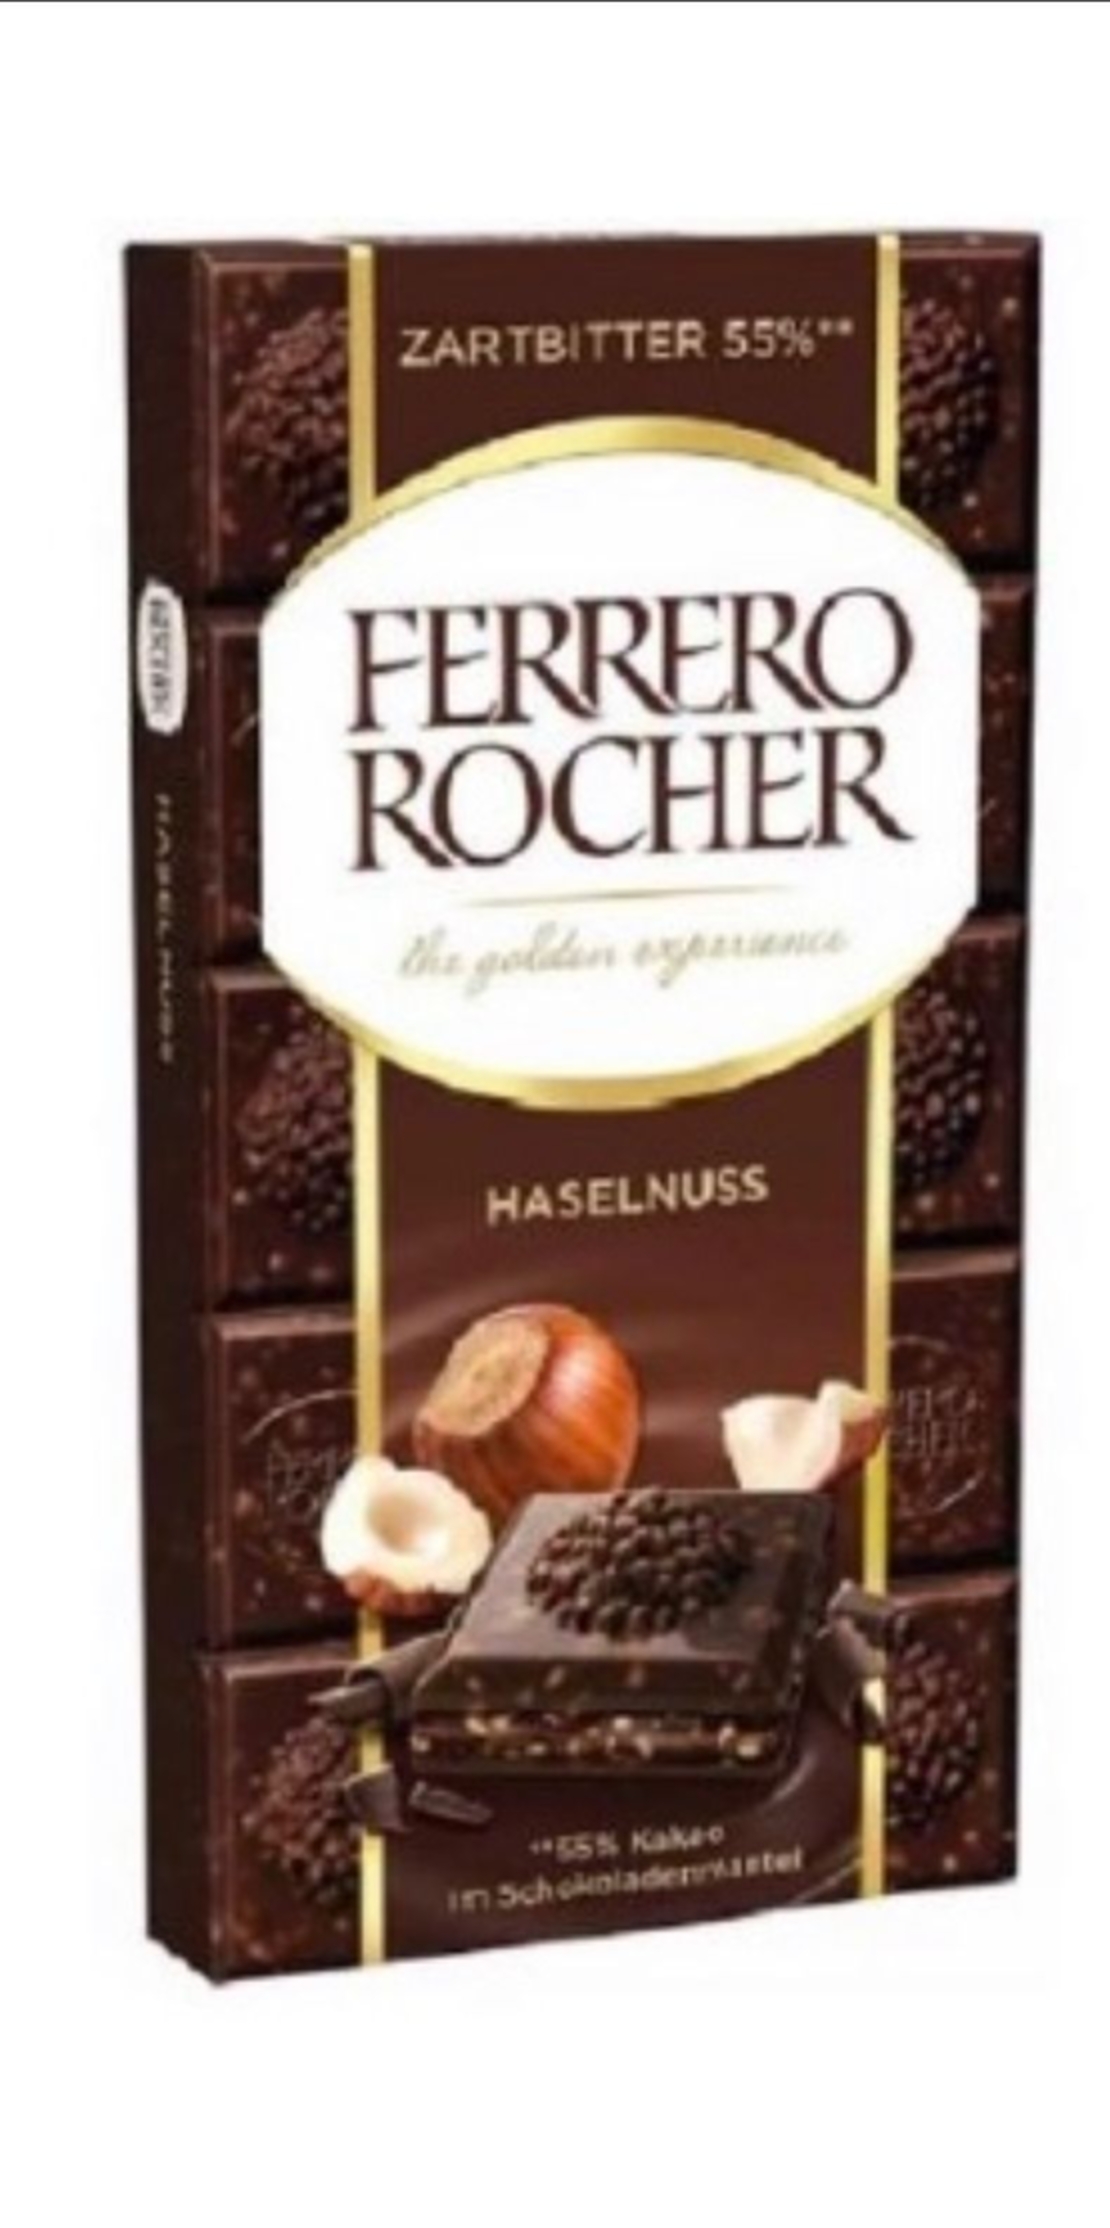 טבלת פררו רושר שוקולד מריר עם קרם אגוזי לוז ואגוזי לוז שלמים FERRERO ROCHER HASELNUSS